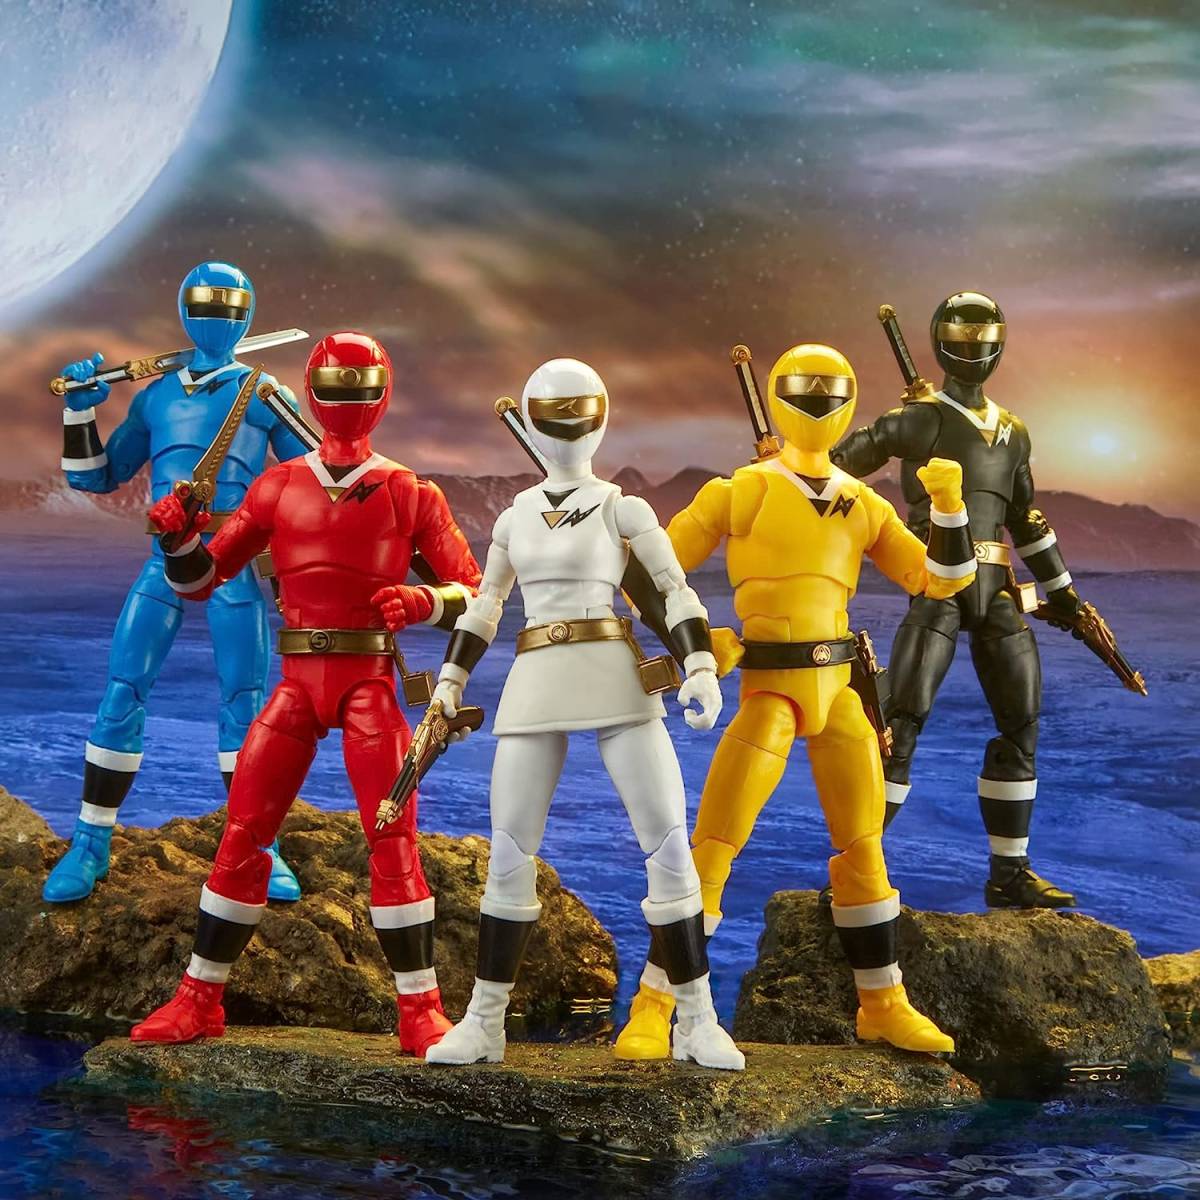 6 дюймовый Power Ranger подсветка коллекция Чужой Ranger 5 body комплект Ninja Sentai Kaku Ranger Power Rangers